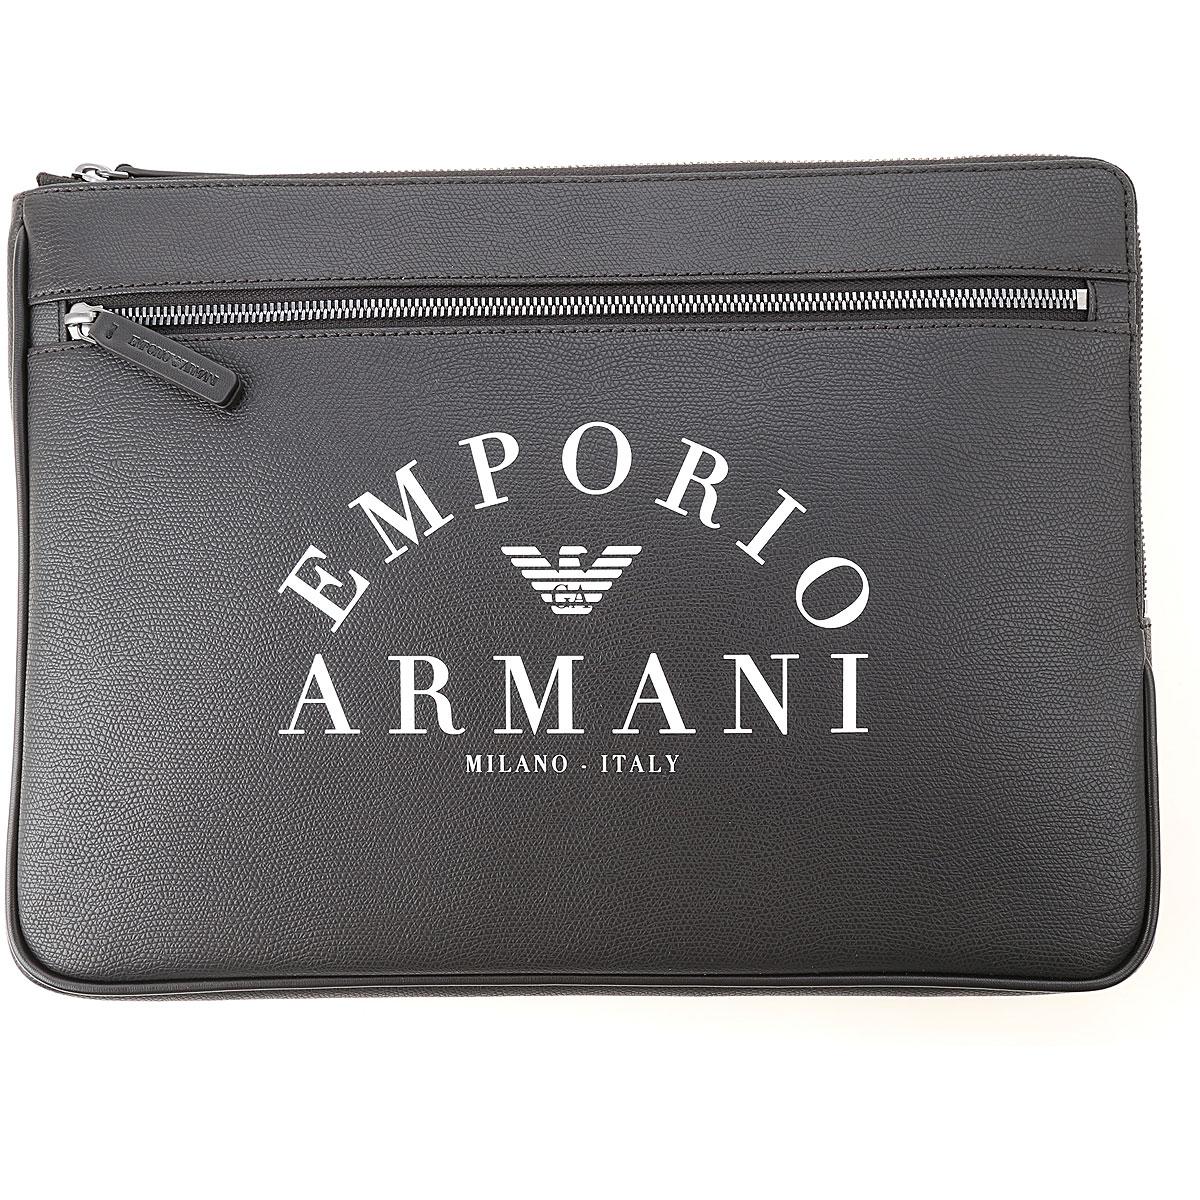 Emporio Armani Clutches in Black for Men - Lyst